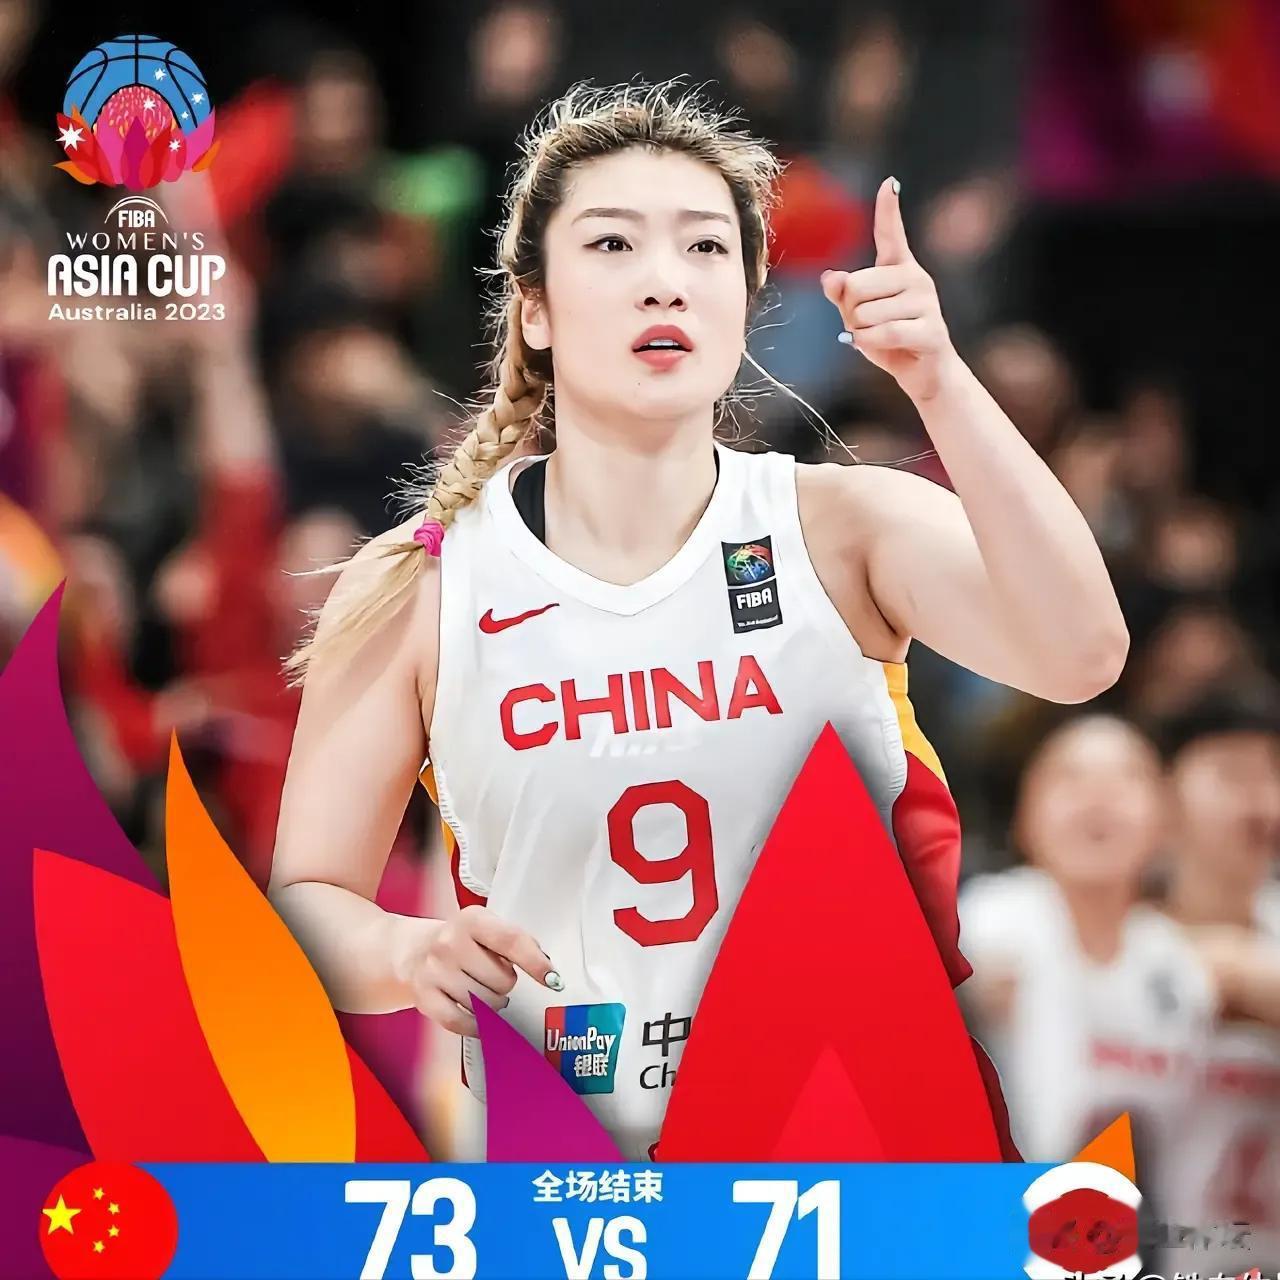 中国男篮与女篮成绩引发争议！
中国男篮与中国女篮只是性别不同而己，为什么一个亚洲(1)